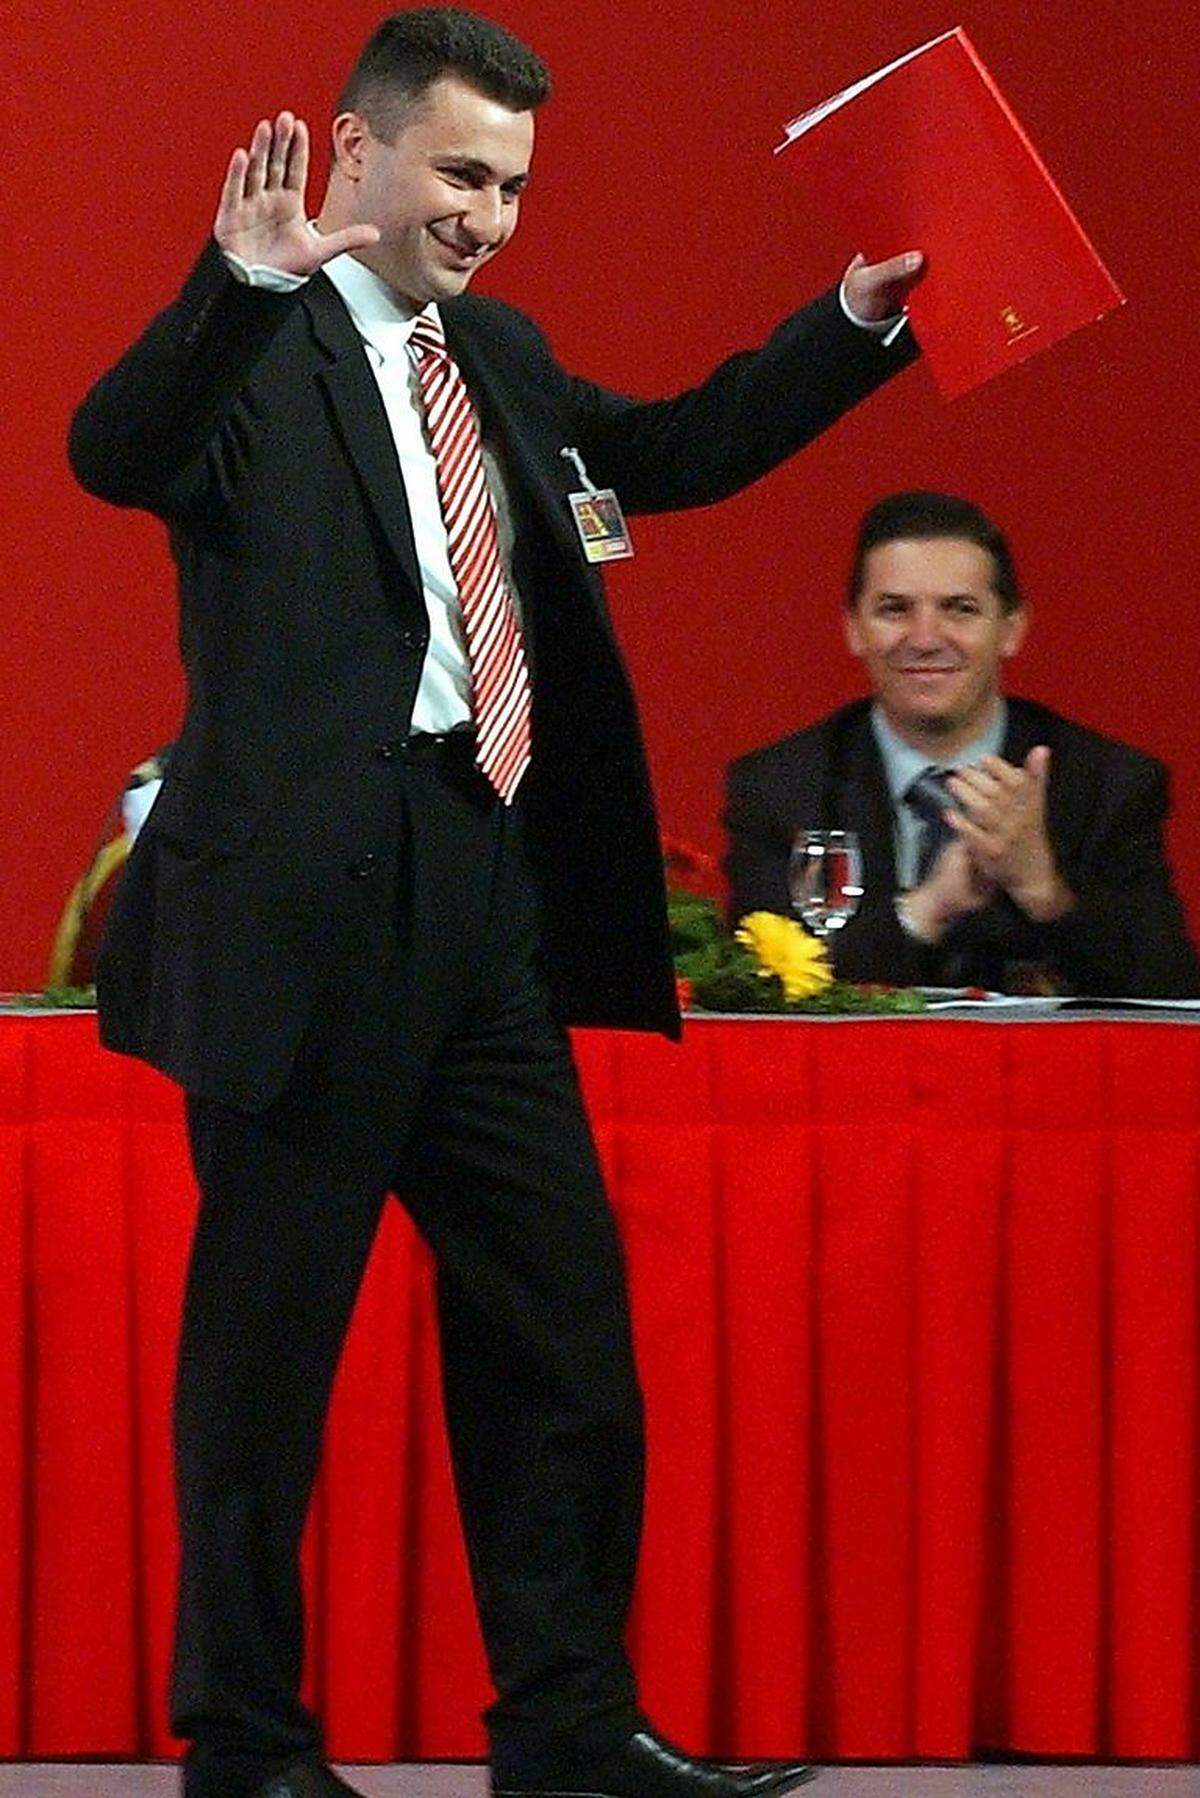 Obwohl erst 43, ist Nikola Gruevski bereits ein alter Hase in der mazedonischen Politik. Mit 29 saß der heutige Premier bereits erstmals auf der Regierungsbank, und das gleich als Finanzminister. Der Politiker der national-konservativen Partei mit dem einprägsamen Namen "Innere Mazedonische Revolutionäre Organisation – Demokratische Partei für Mazedonische Nationale Einheit" ist studierter Ökonom.